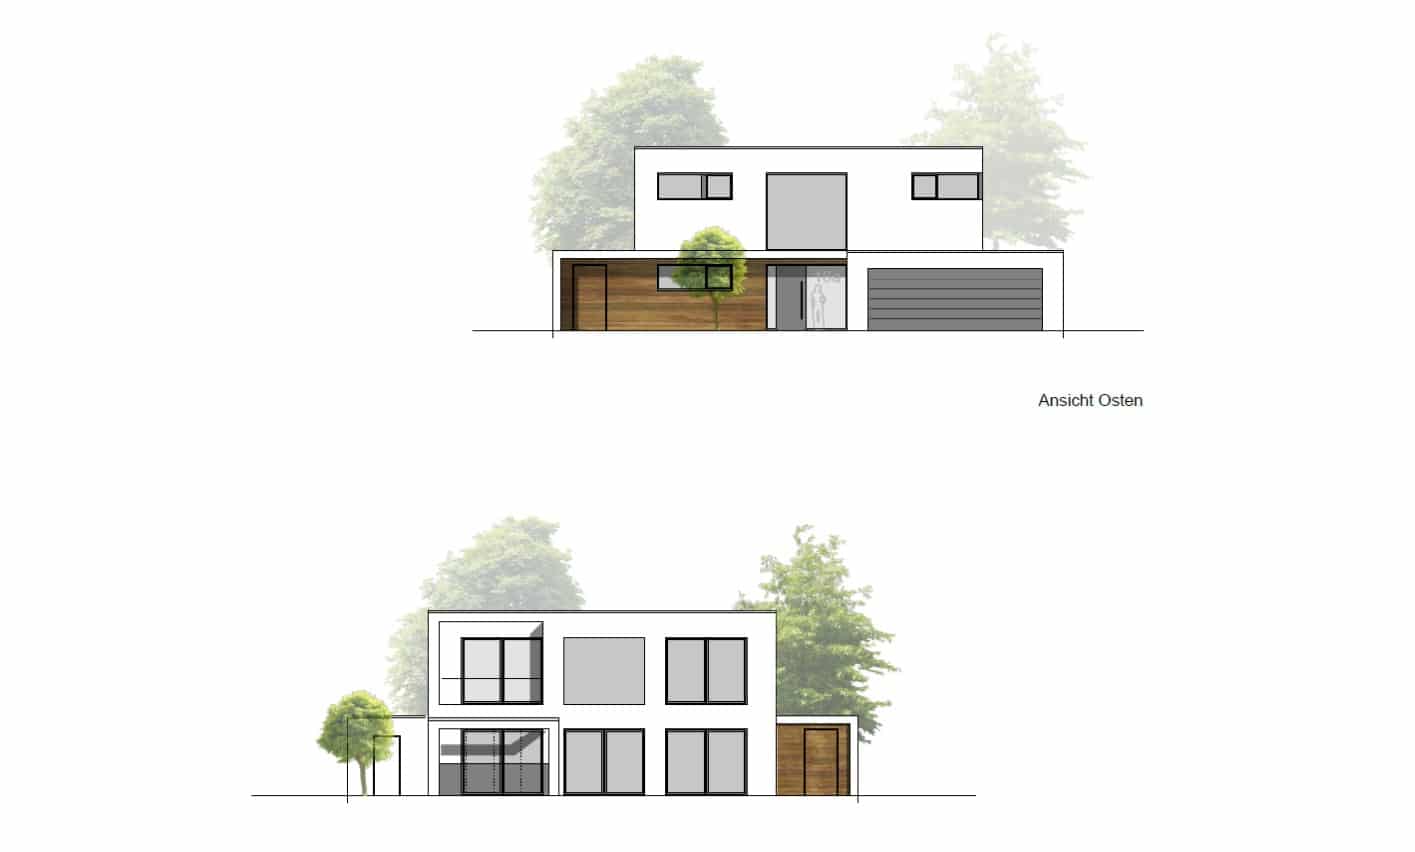 Entwurf Nr.2 ist fertig - Das Koala-Haus entwurf nr.2 Entwurf Nr.2 – Das Koala-Haus Der Dritte Entwurf HousePit Architekt